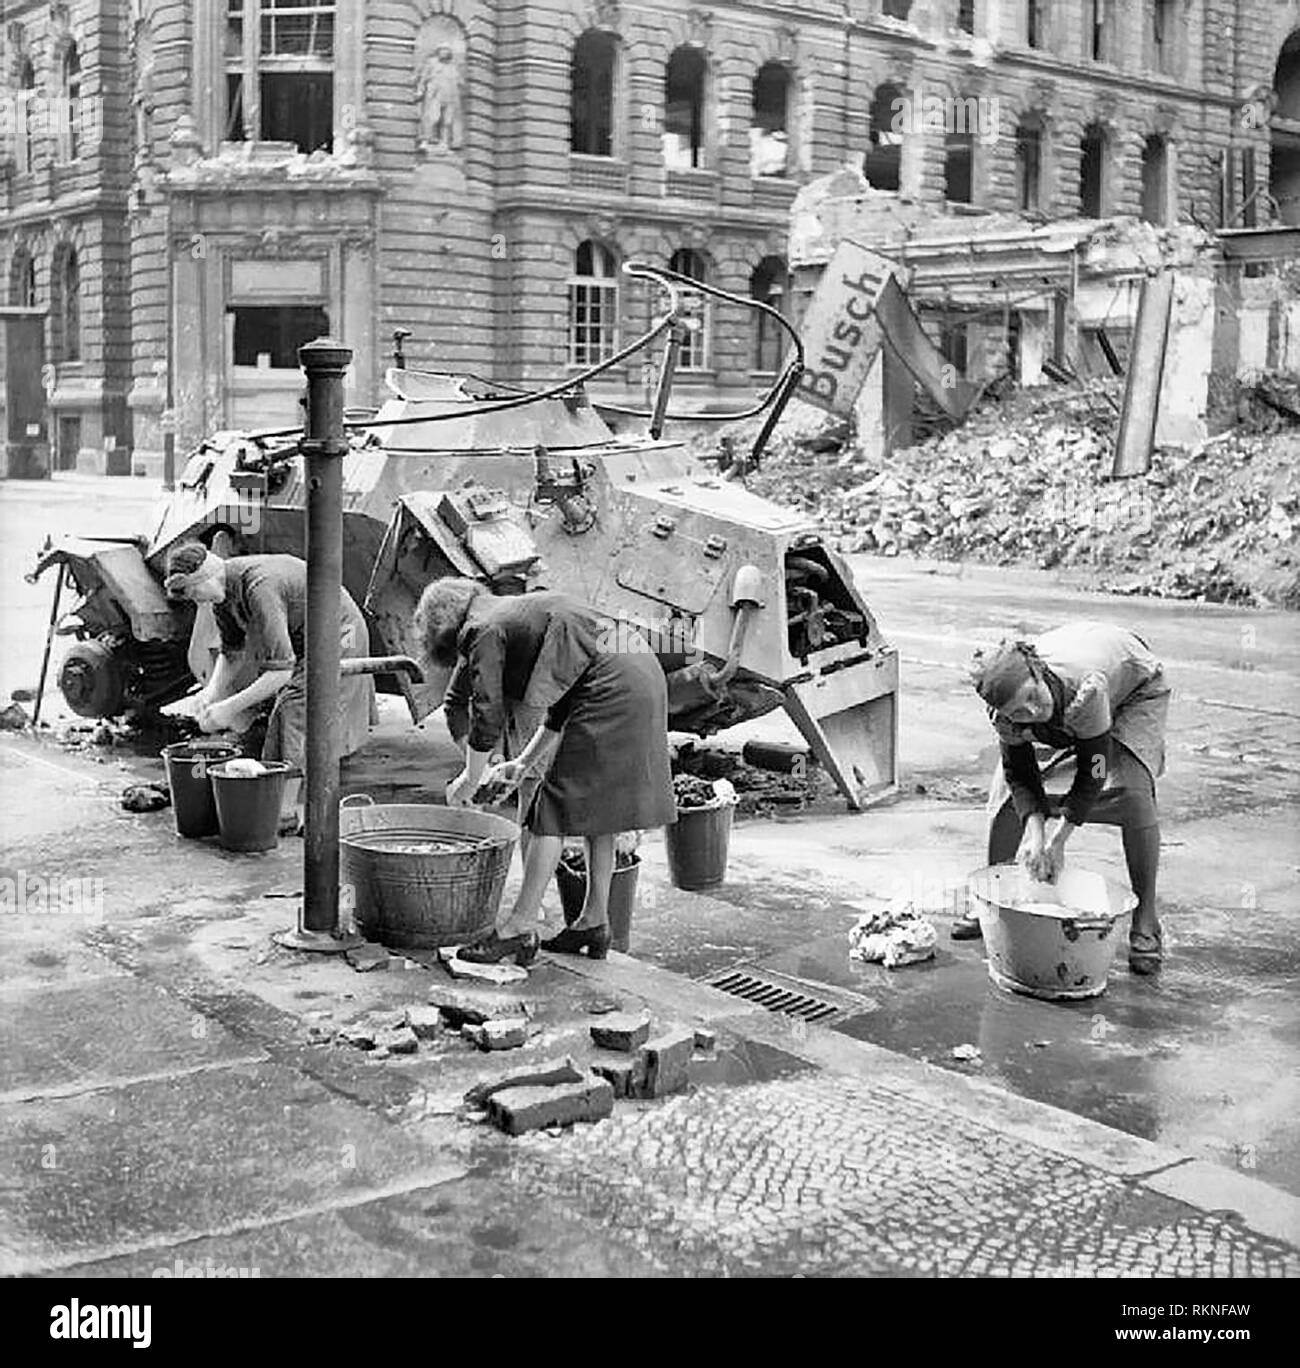 Помощь германии после войны. Берлин после войны 1945. Берлин в 1945 году после войны.